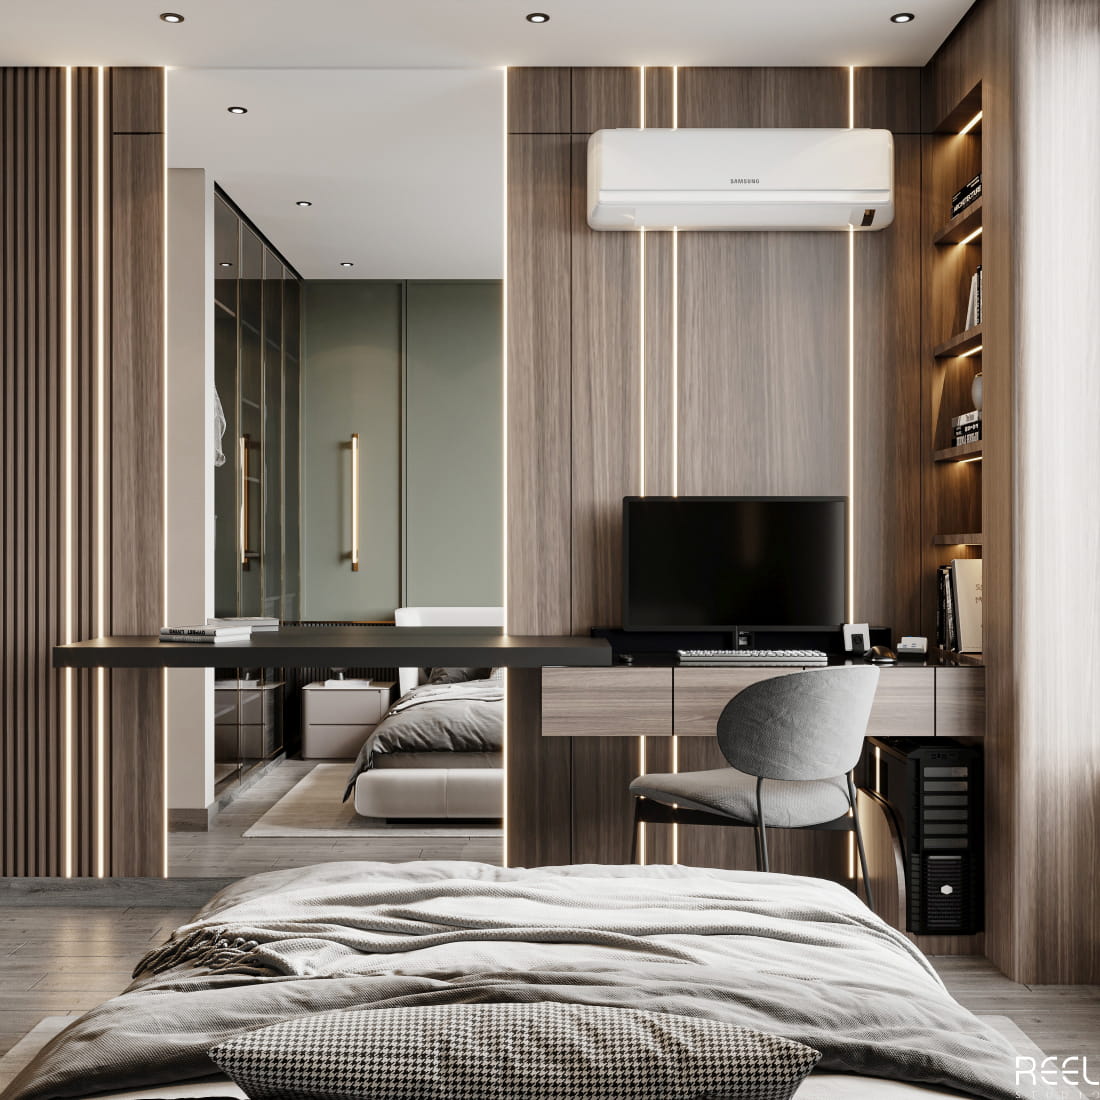 green-bedroom-design-